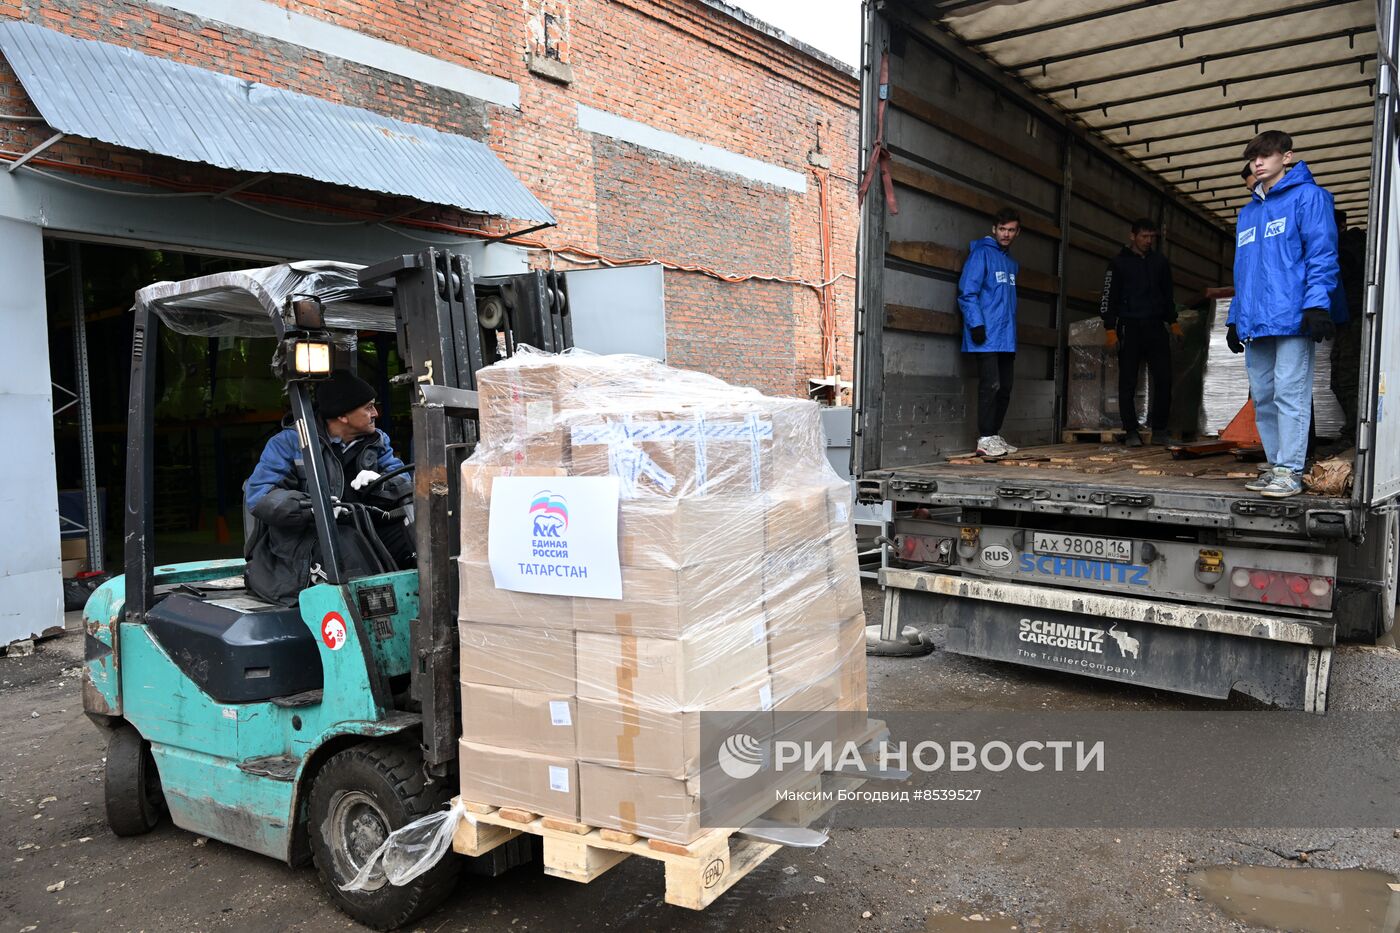 Отправка гуманитарного груза в ЛНР из Казани